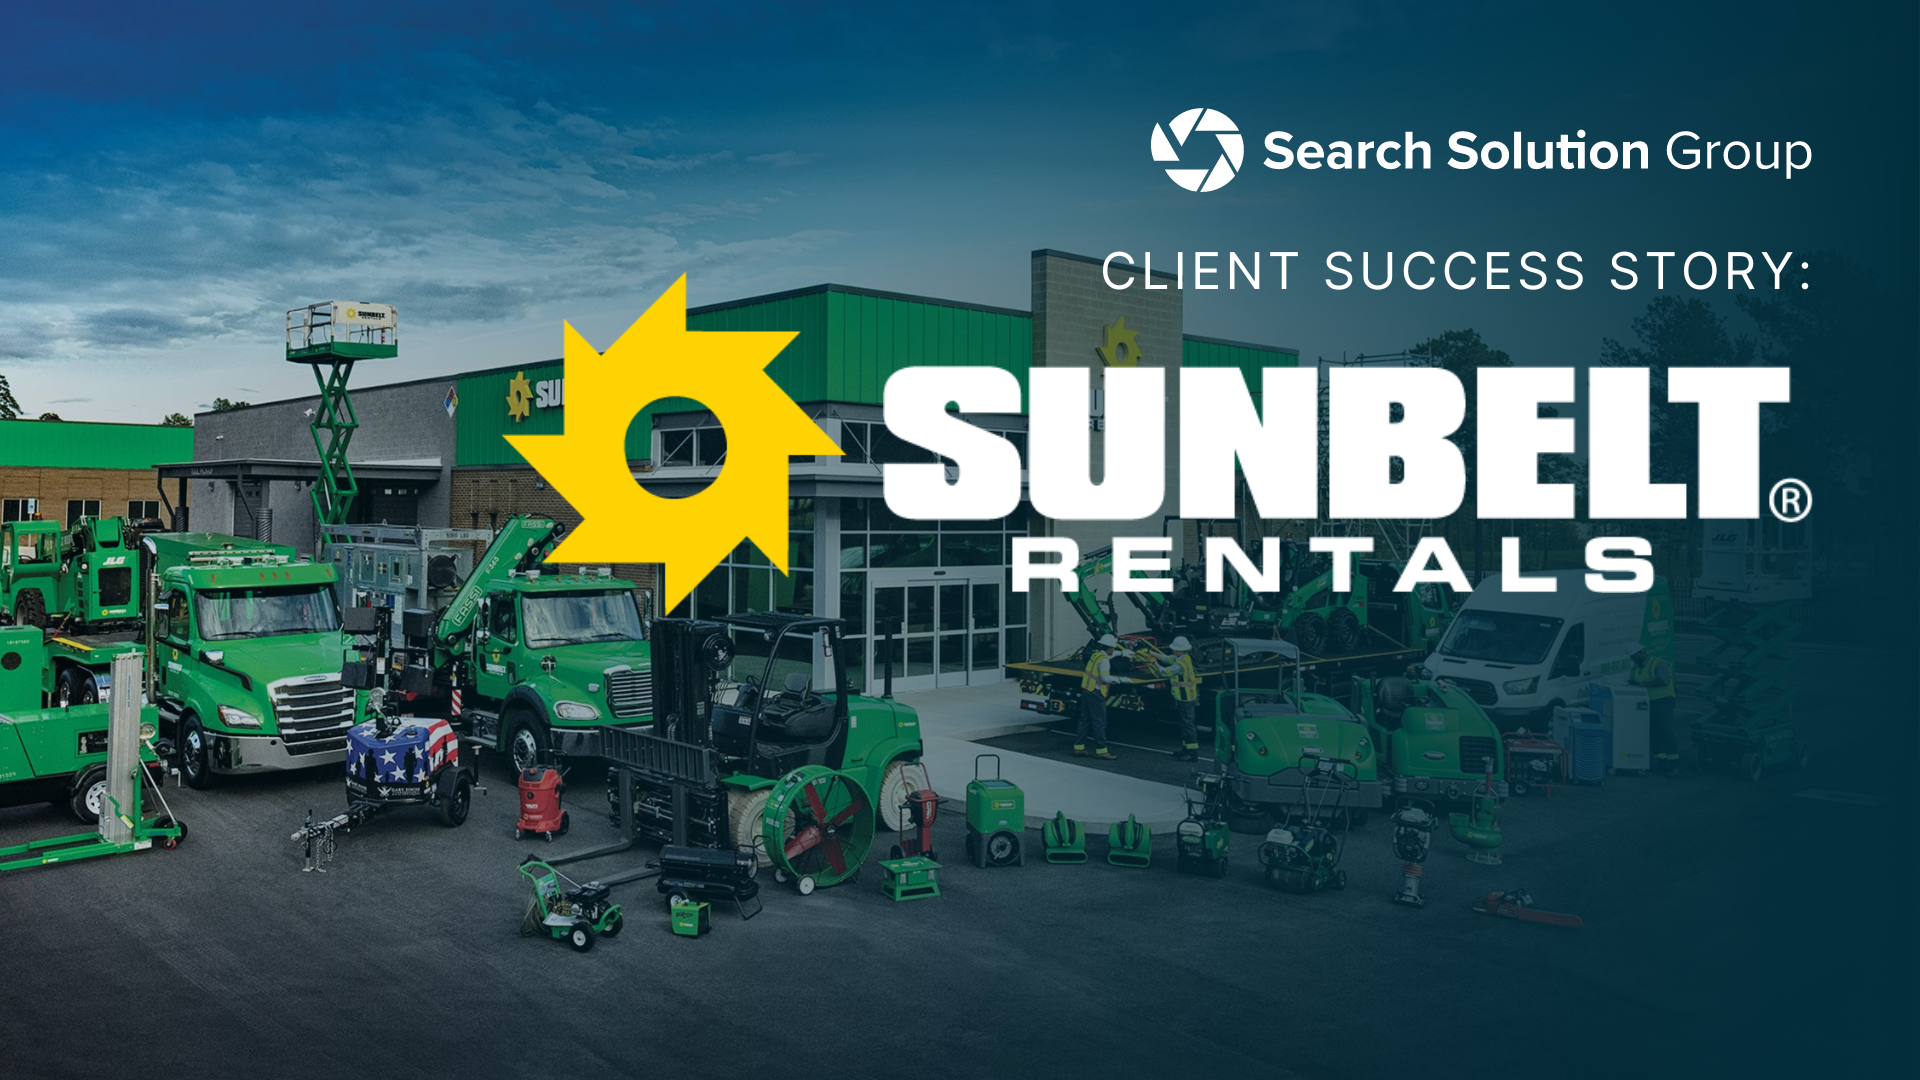 Client Success Stories: Sunbelt Rentals